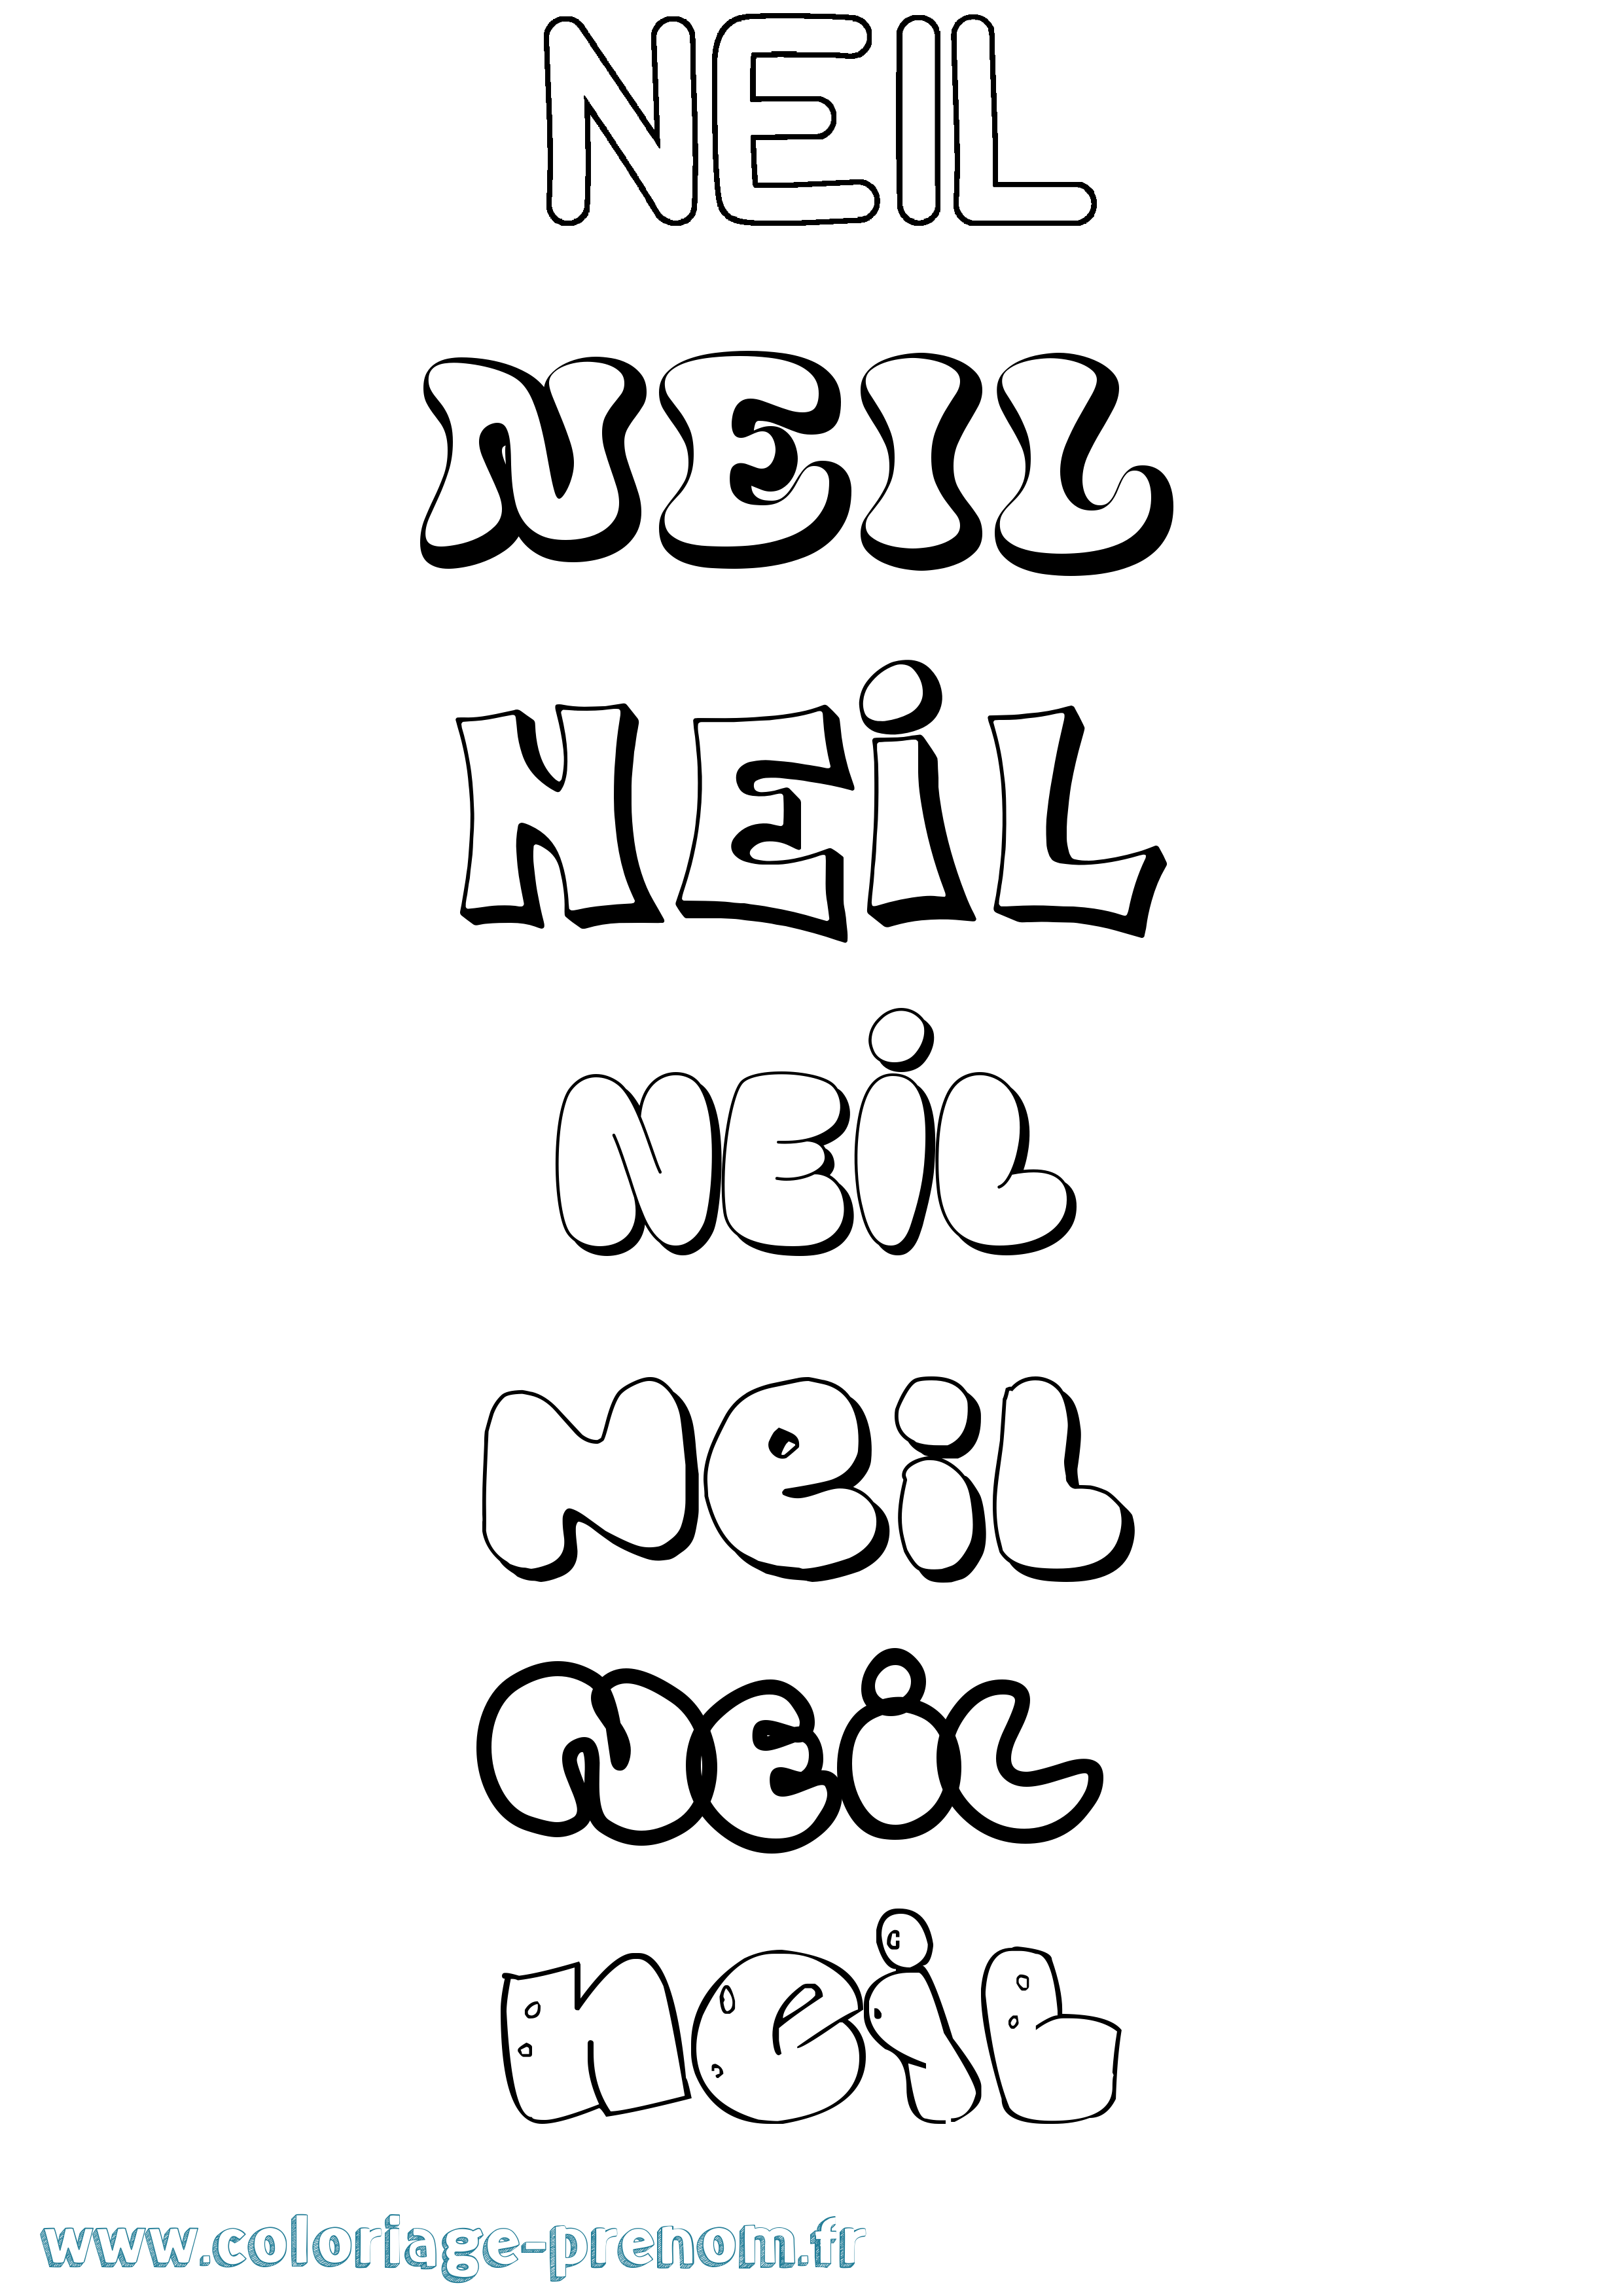 Coloriage prénom Neil